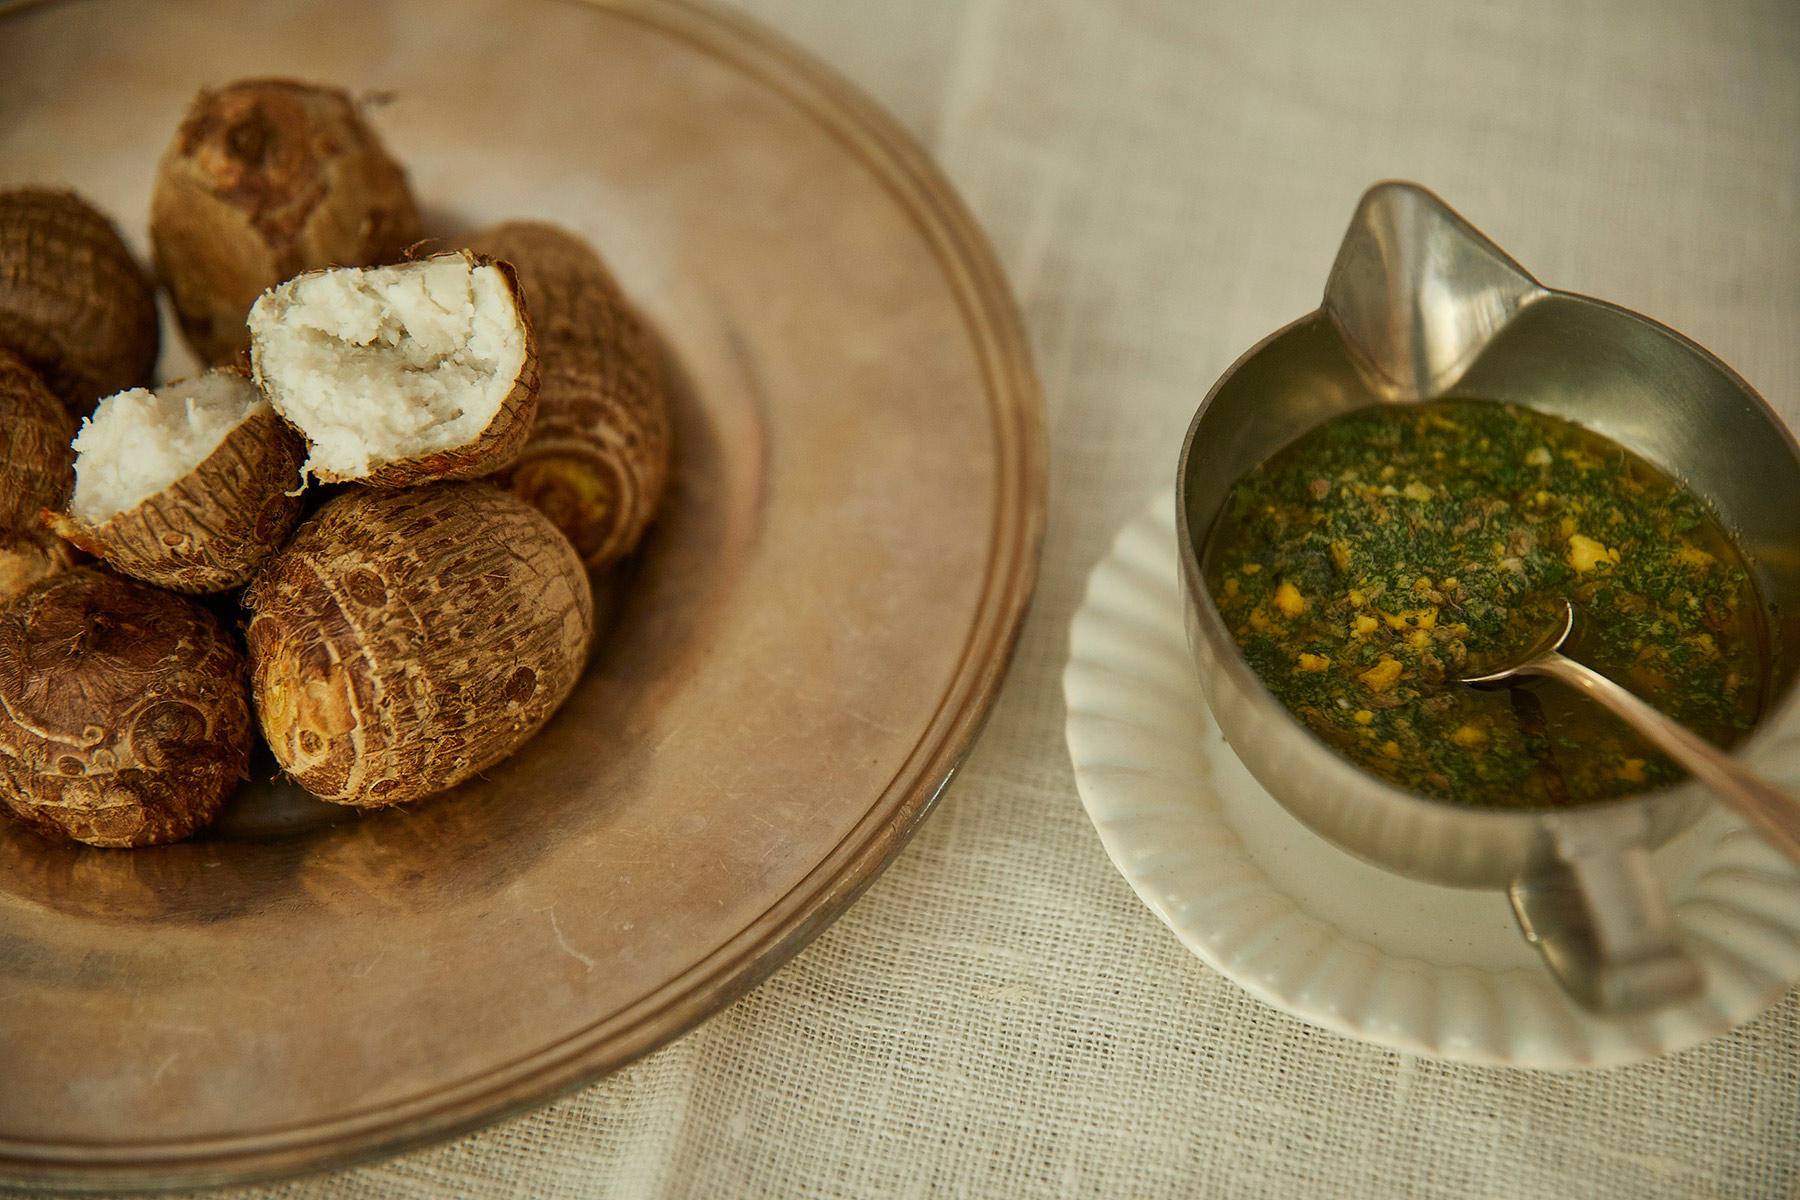 皮ごと食べる 里芋のローストとサルサヴェルデ 旬の野菜の知恵袋 公式 Dancyu ダンチュウ